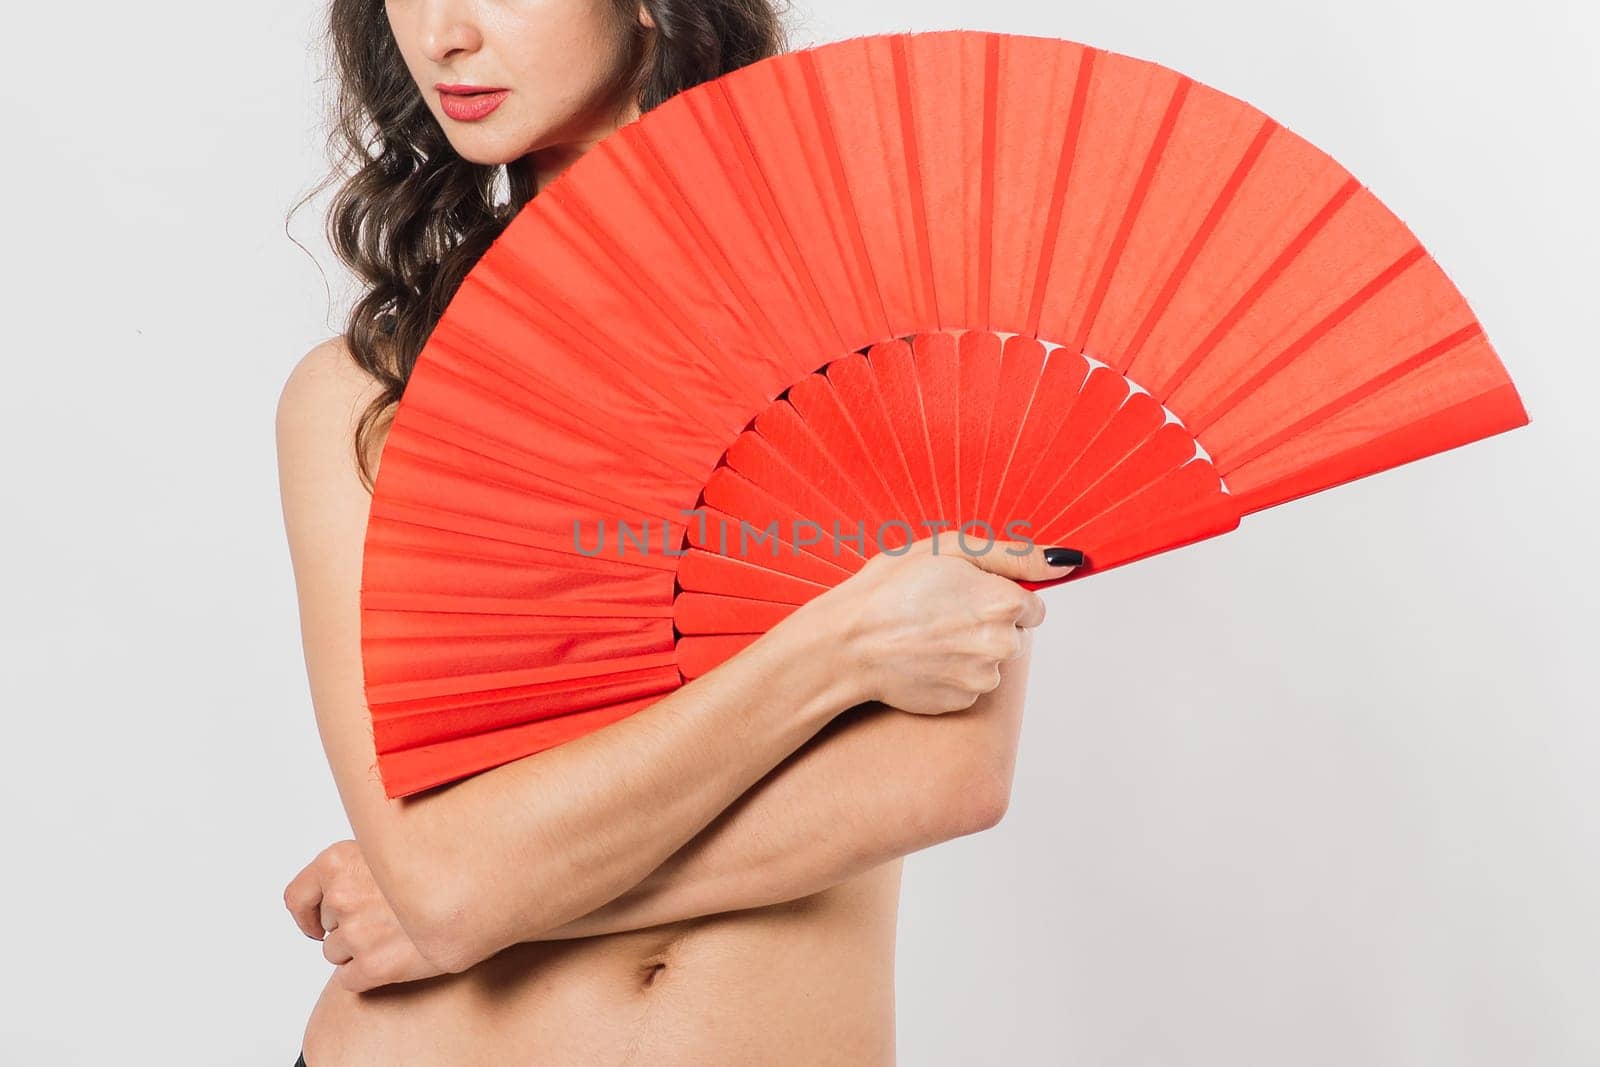 Dancer female with fan in lingerie, nude by Zelenin